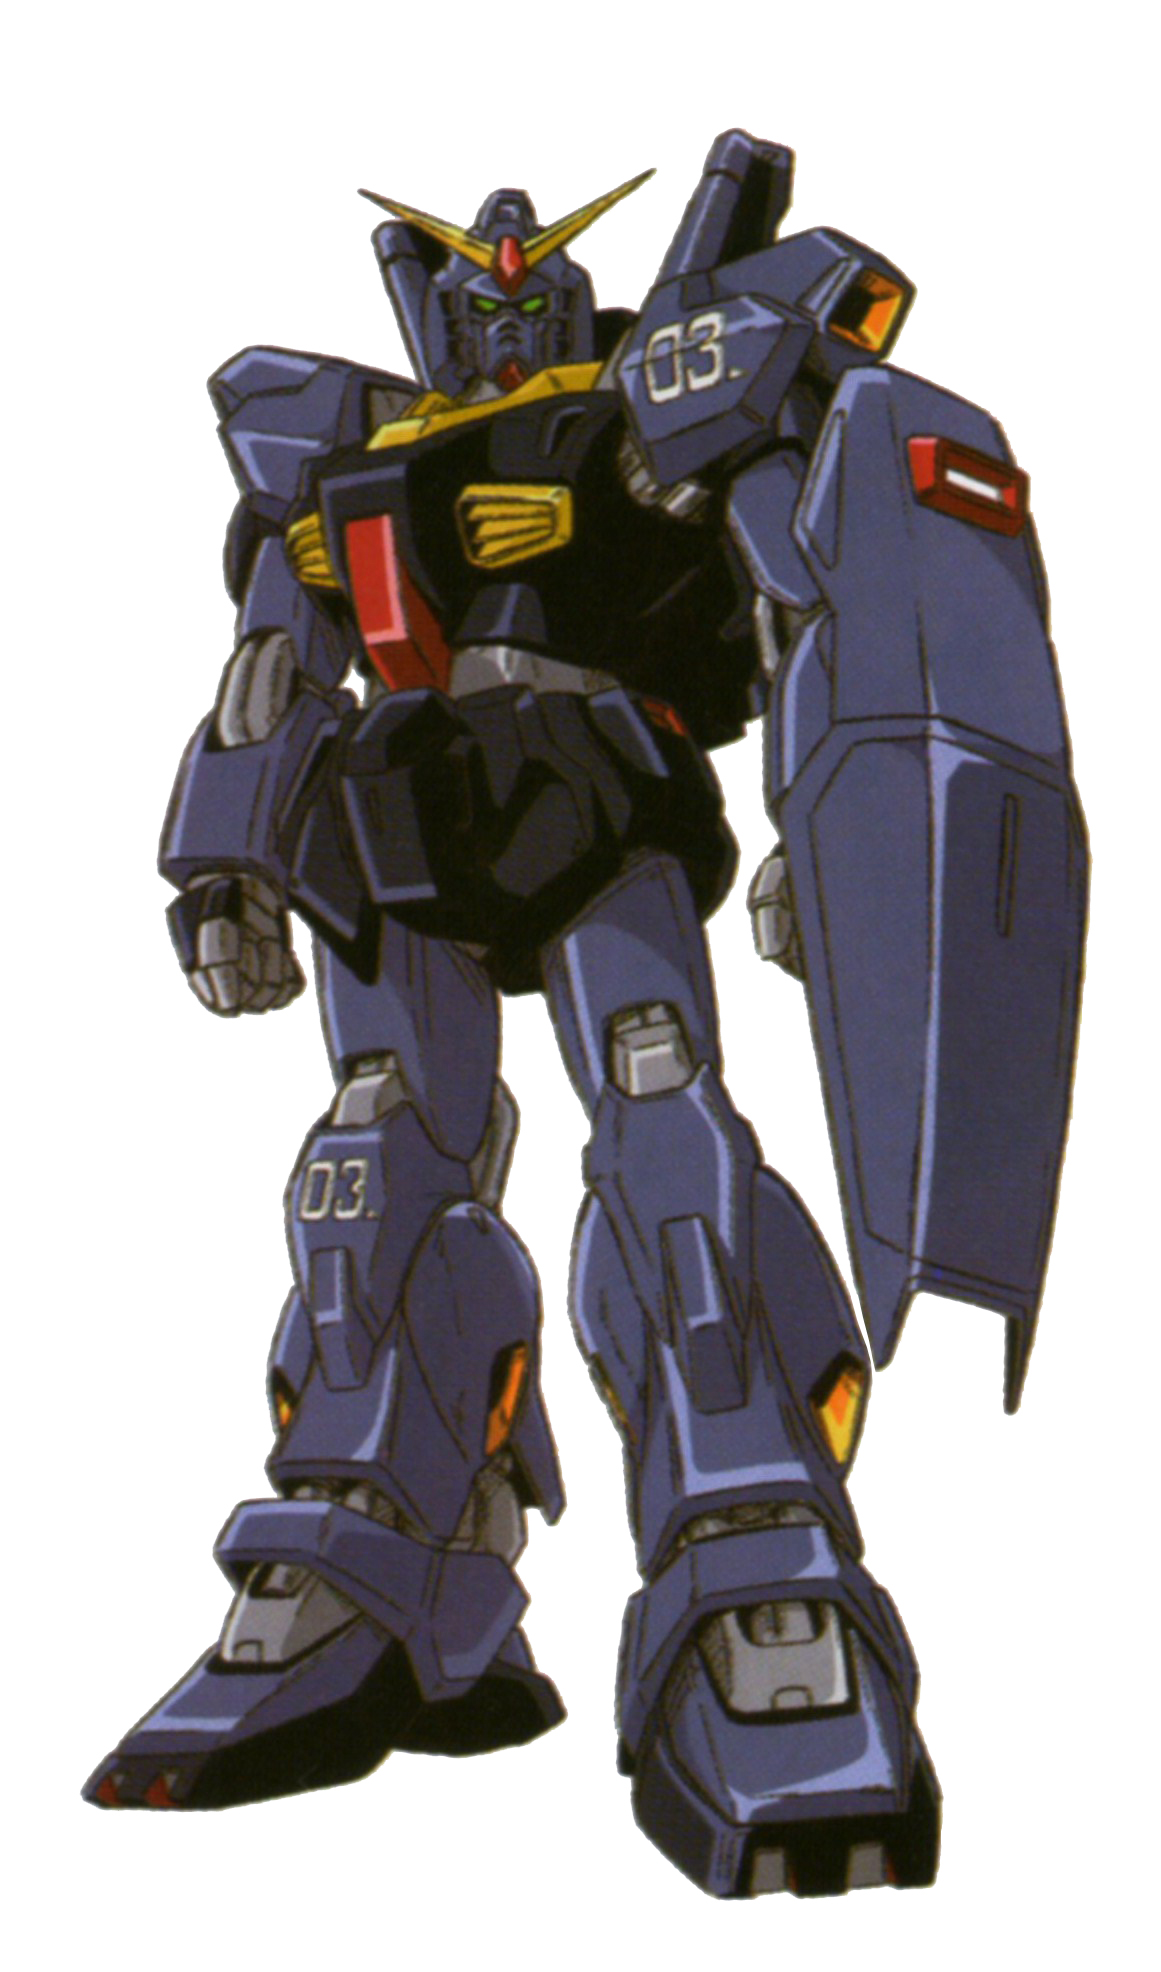 BANDAI PG Mobile Suit Z Gundam - Perfect Grade GUNDAM Mk-II